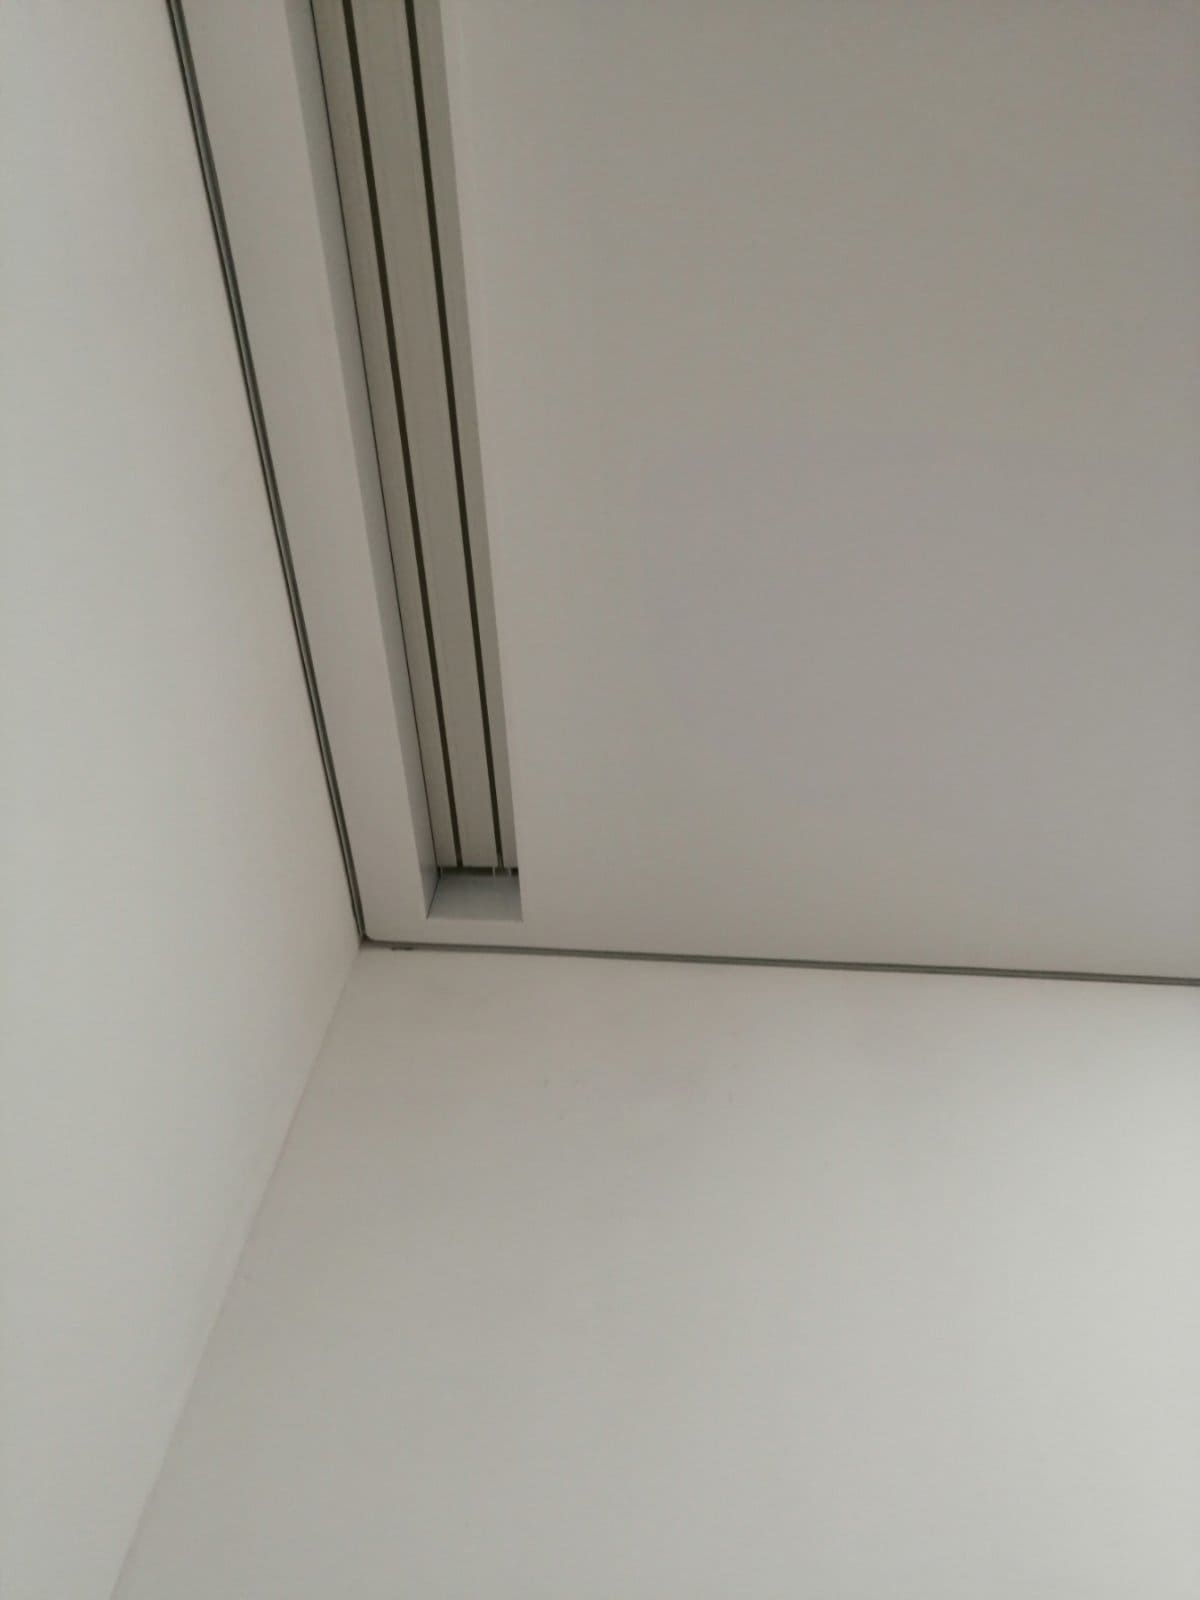 Монтаж скрытого карниза для штор в натяжном потолке